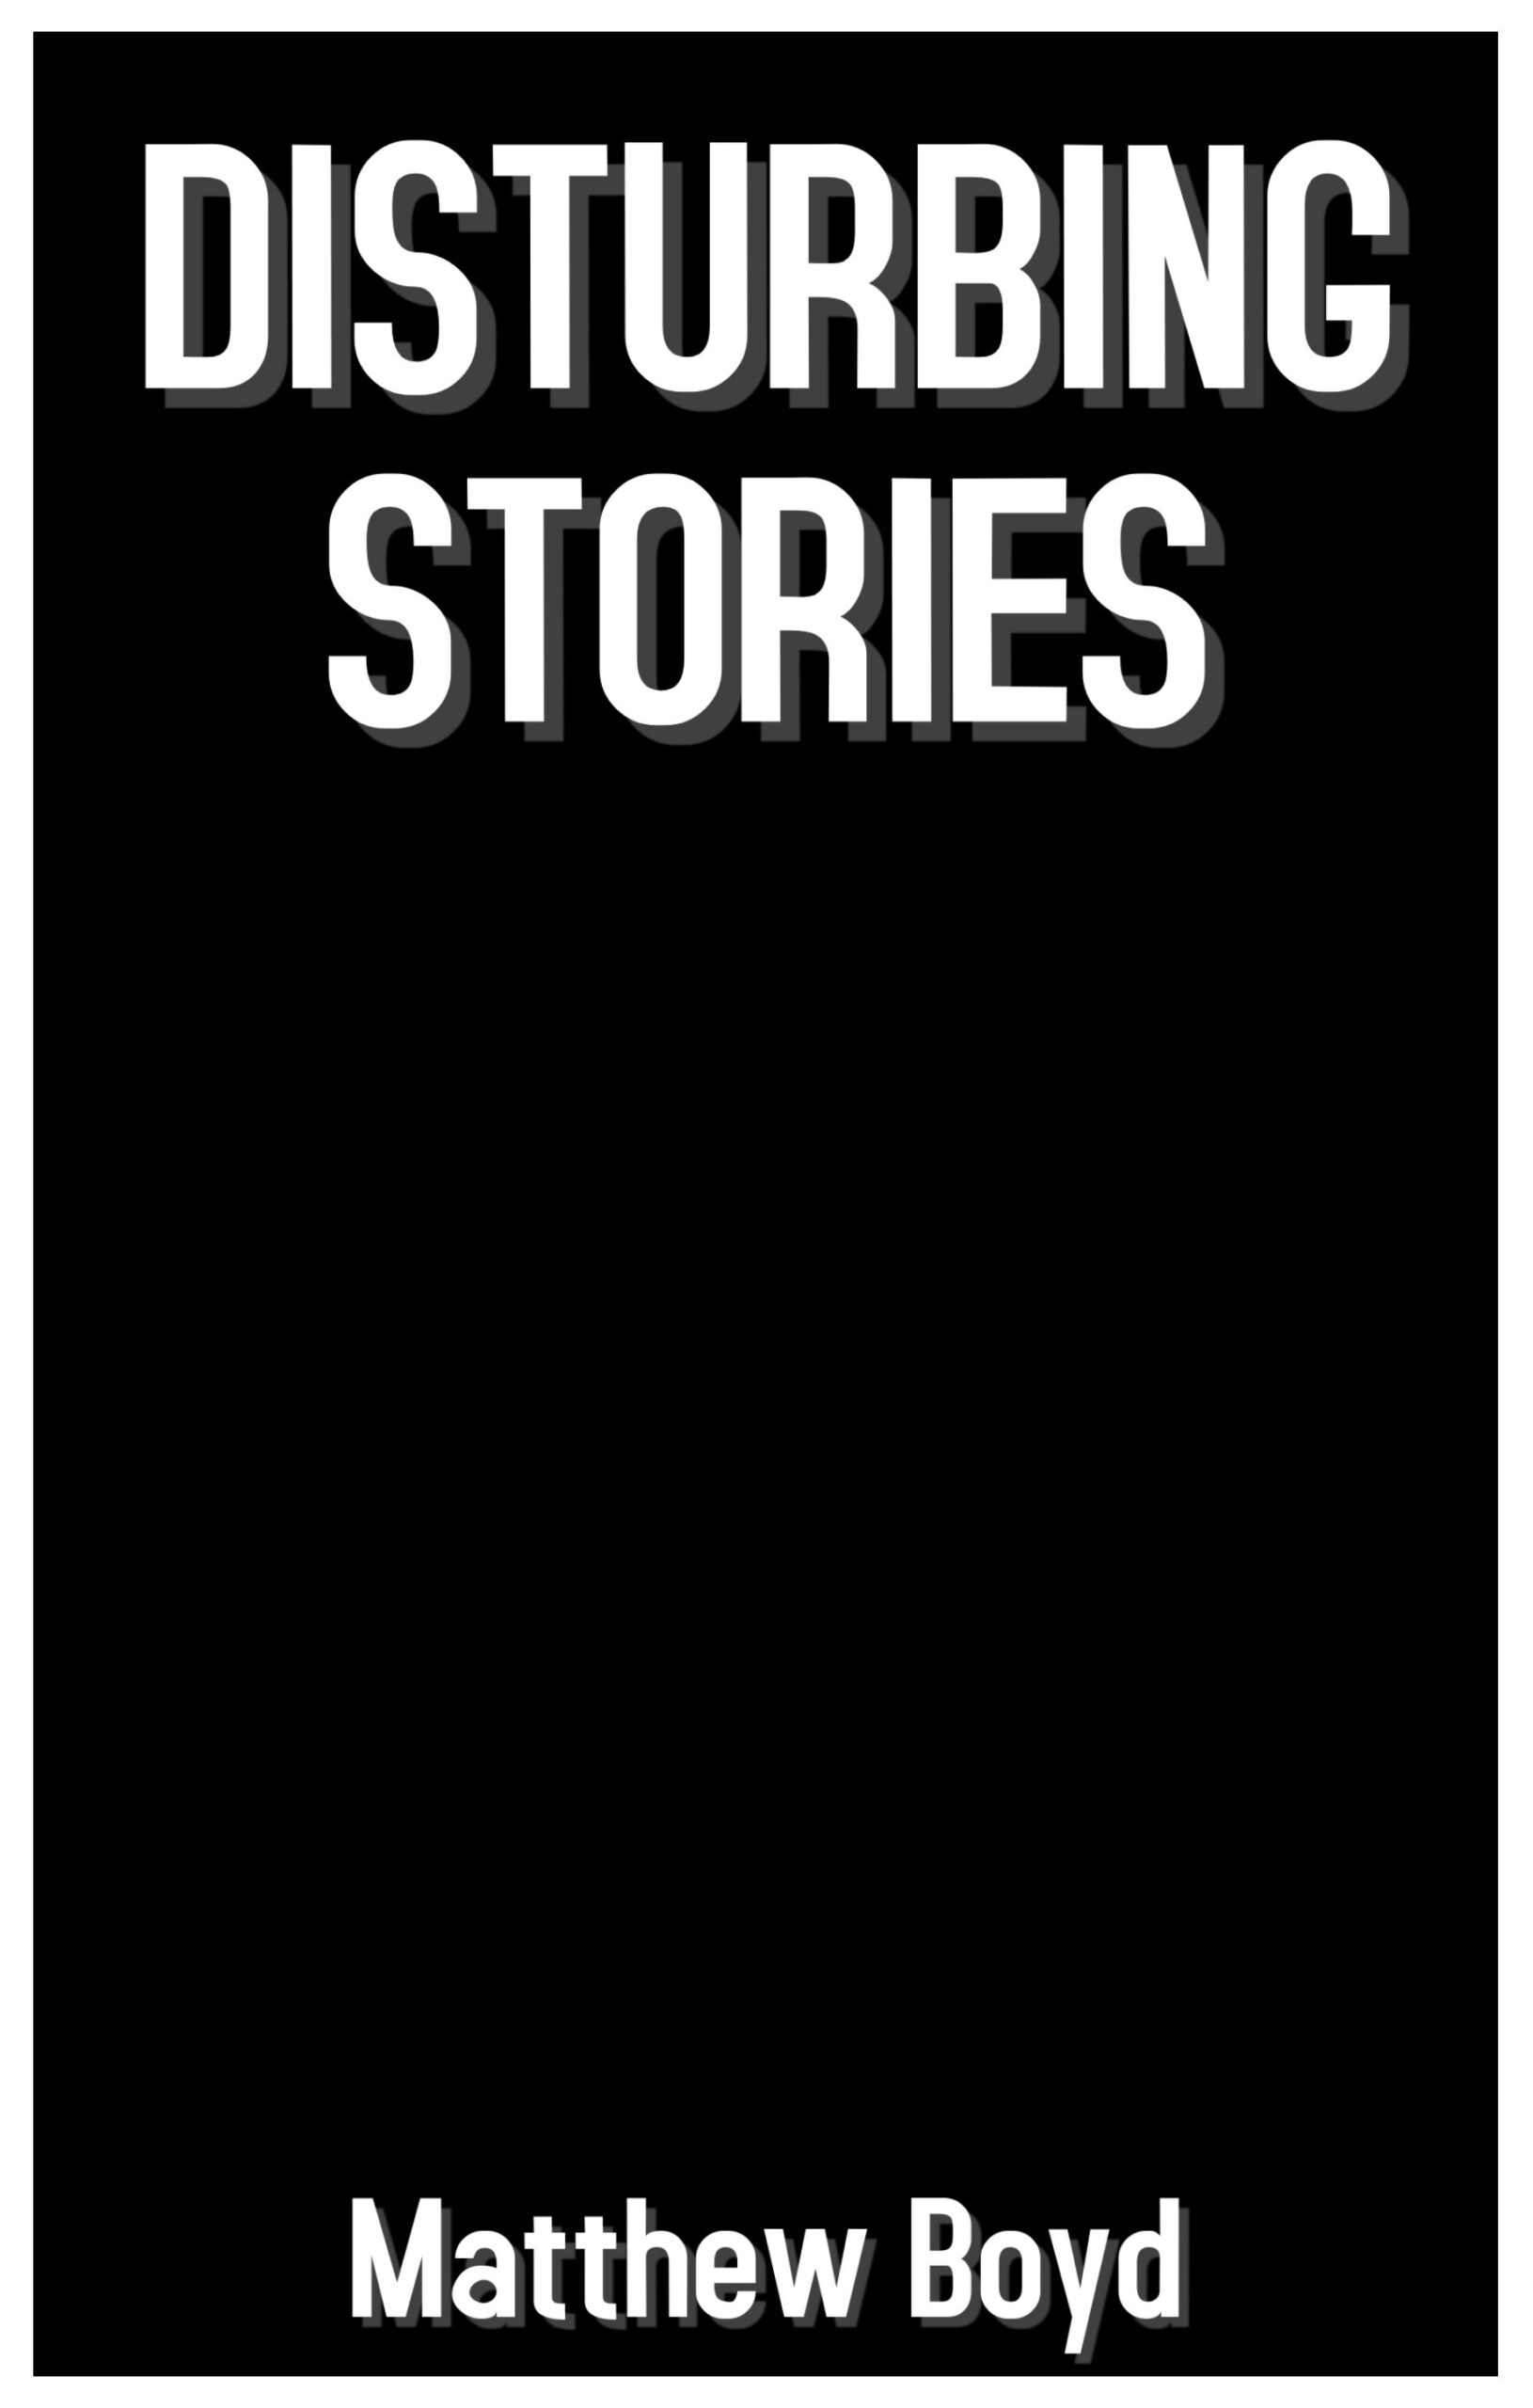 FREE: DISTURBING STORIES by Matthew Boyd